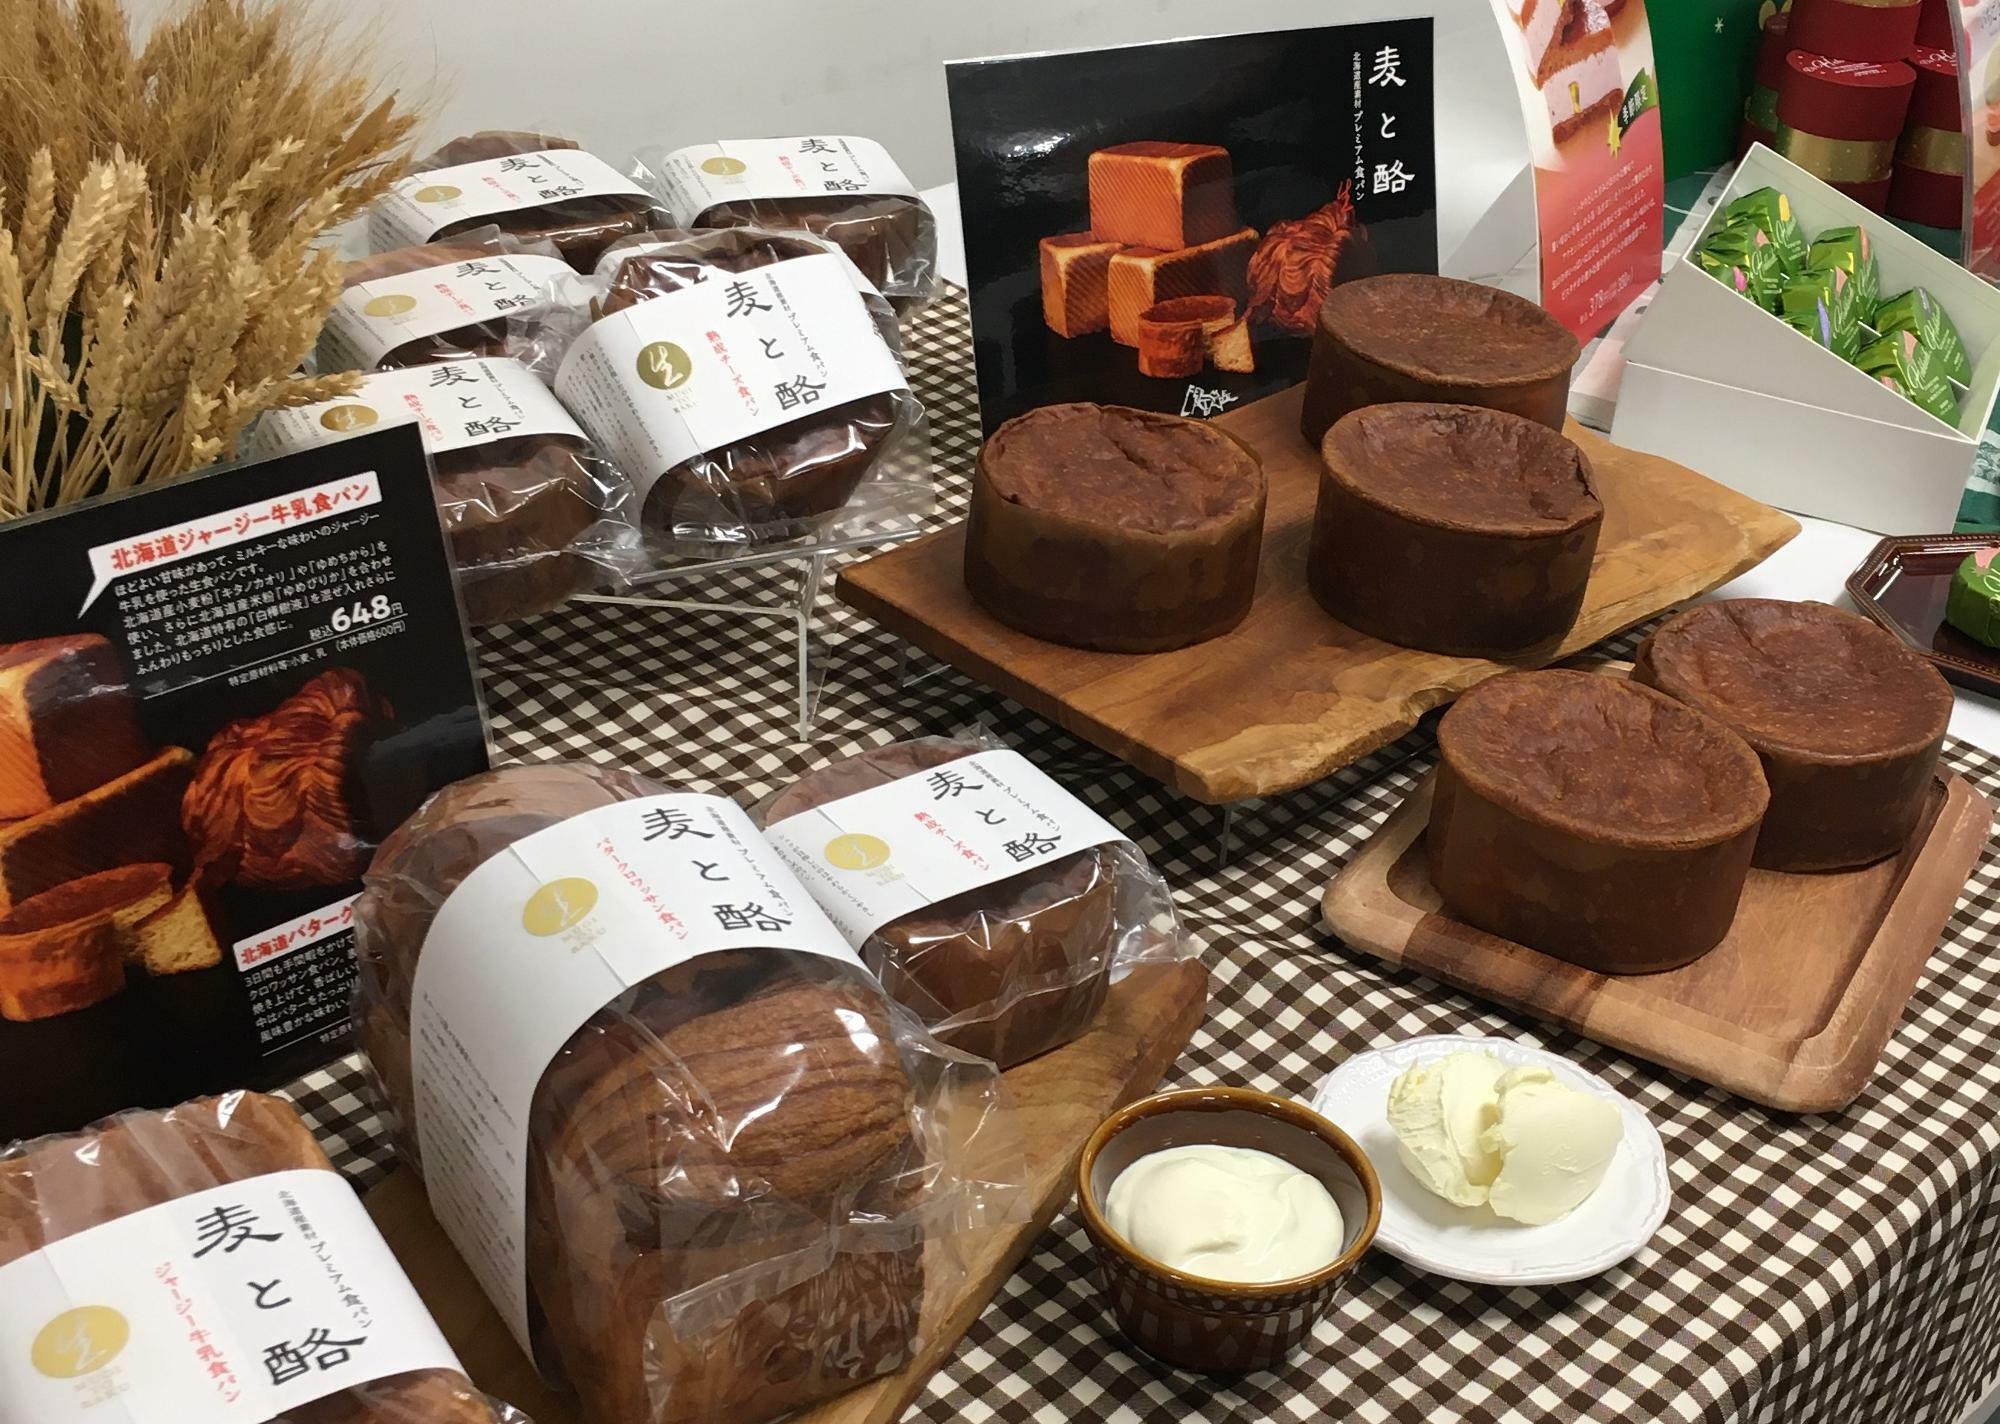 右側の丸い形が新発売の「北海道 熟成チーズパン」